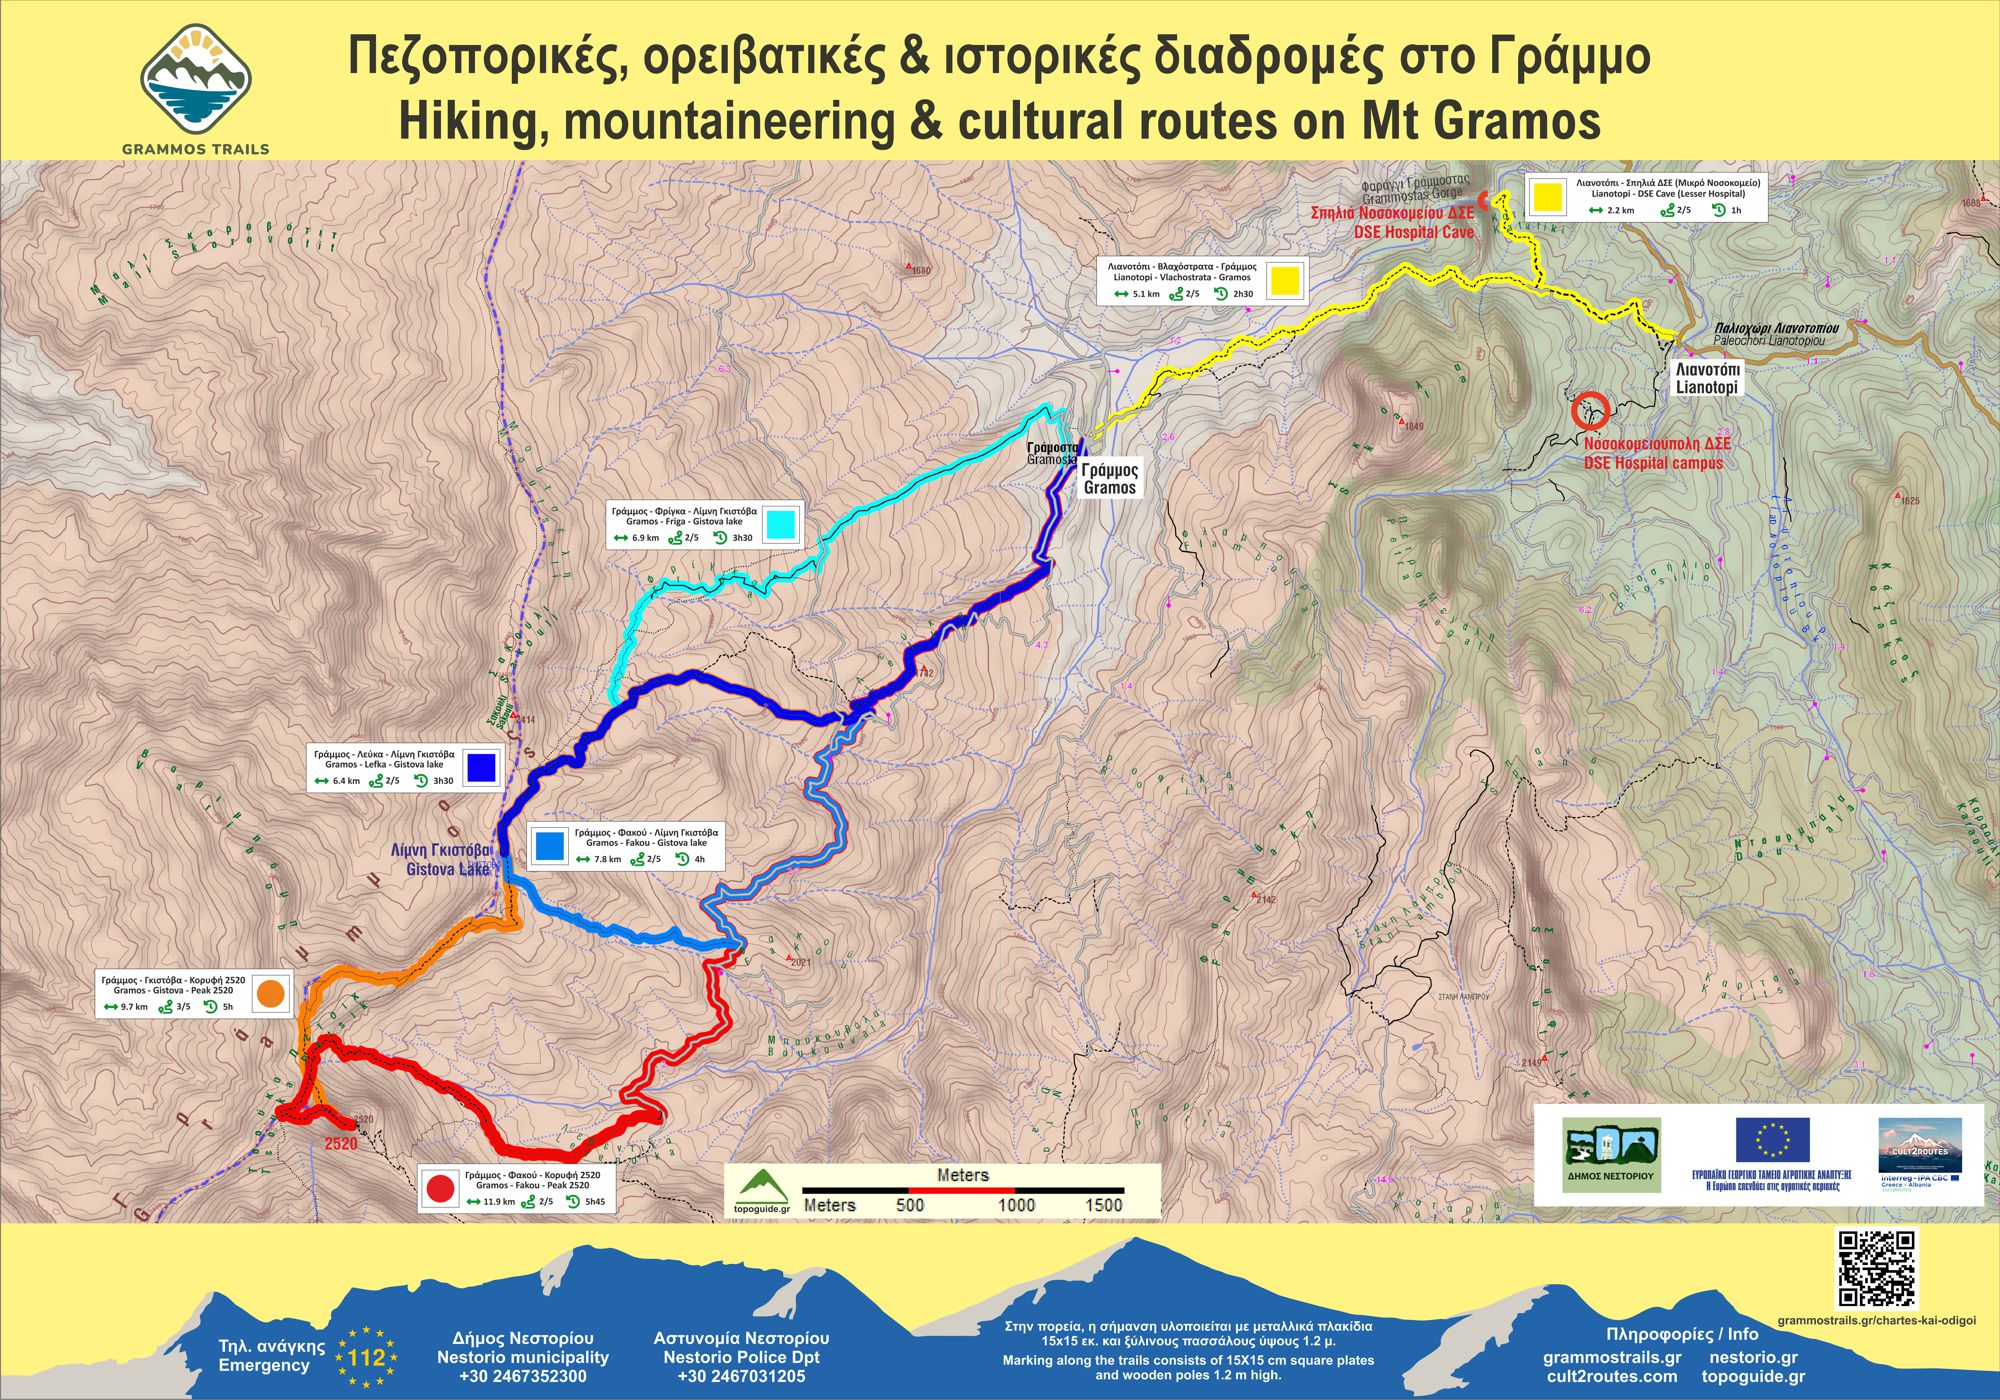 Η οργάνωση του δικτύου πεζοπορικών, ορειβατικών και ιστορικών διαδρομών Grammos Trails: Η κεντρική πινακίδα στο χωριό Γράμμος